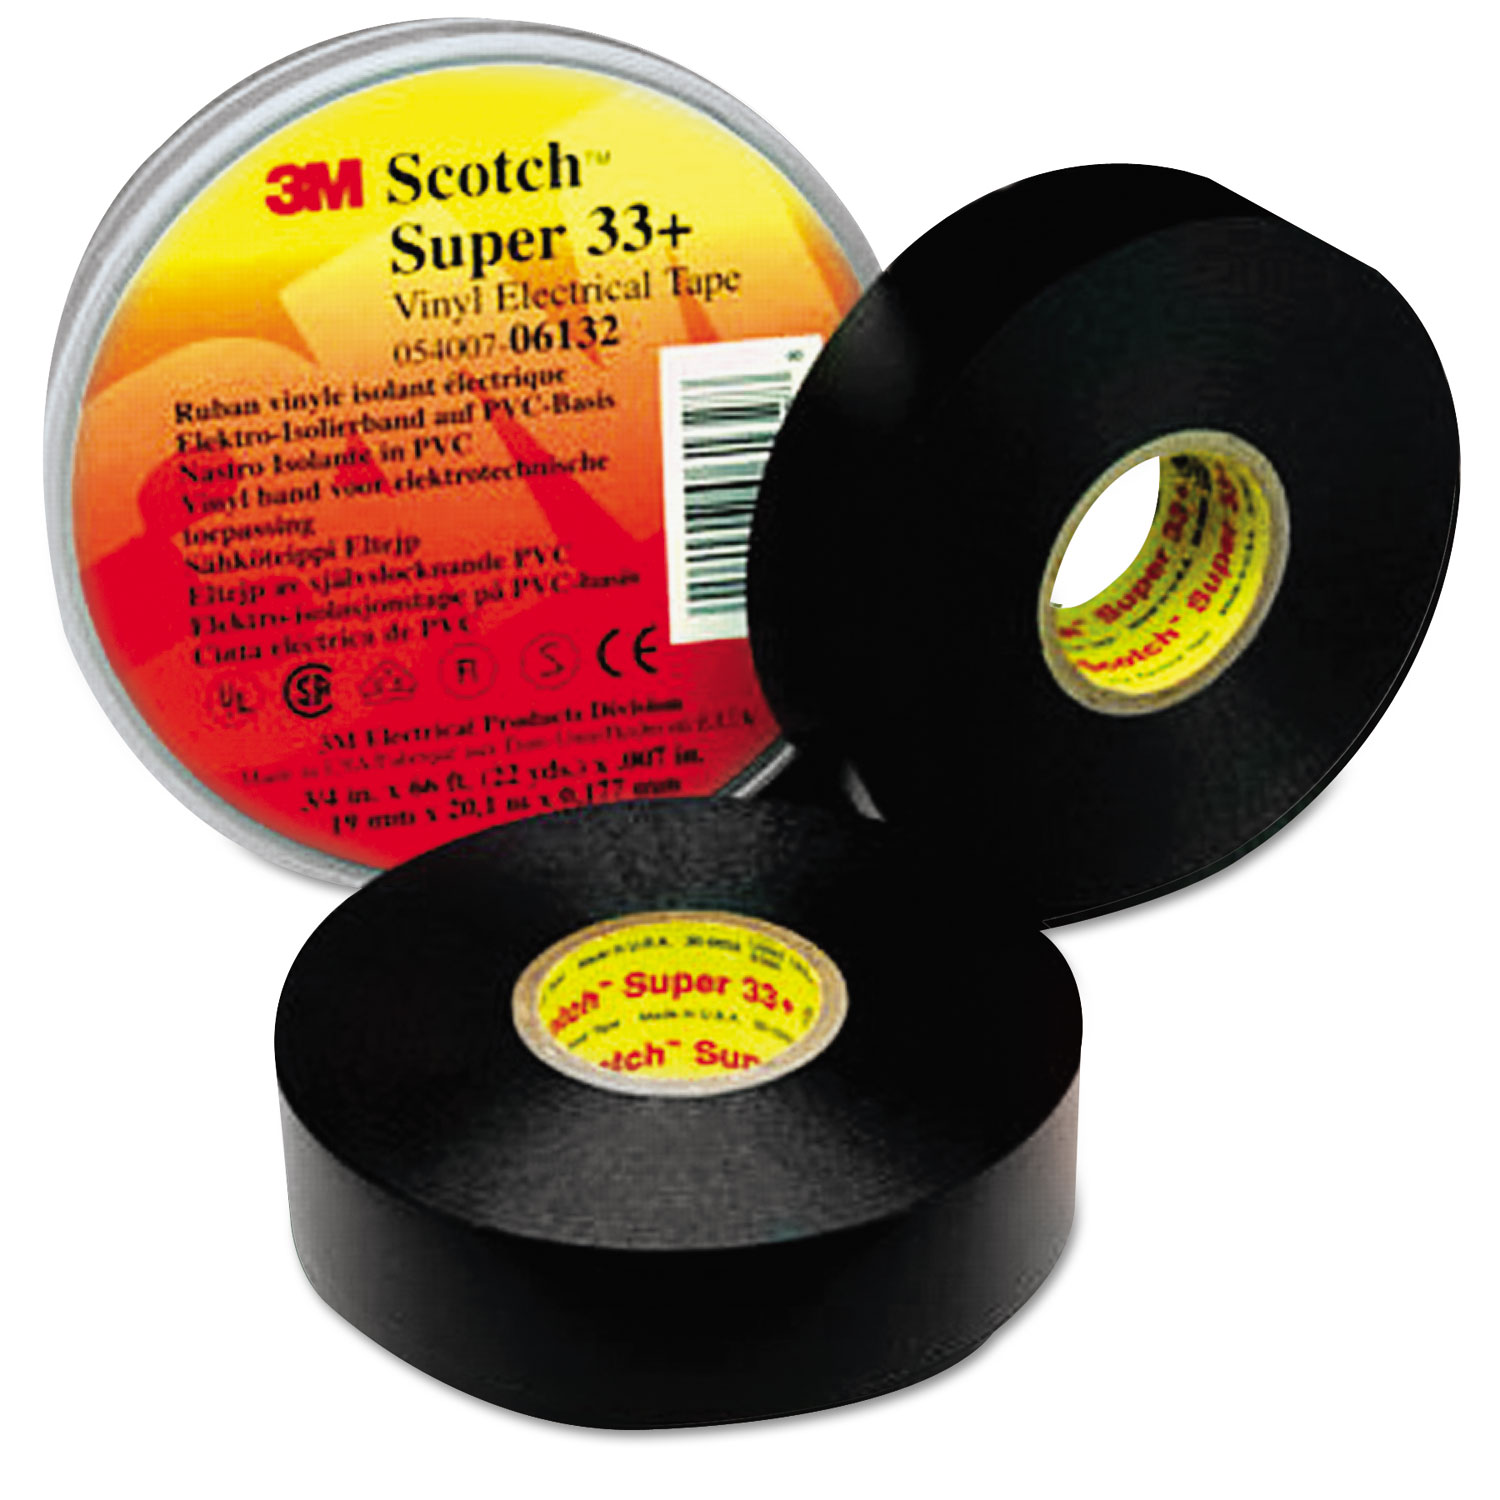 Scotch 33+ Super Vinyl Electrical Tape, 3/4 x 66ft